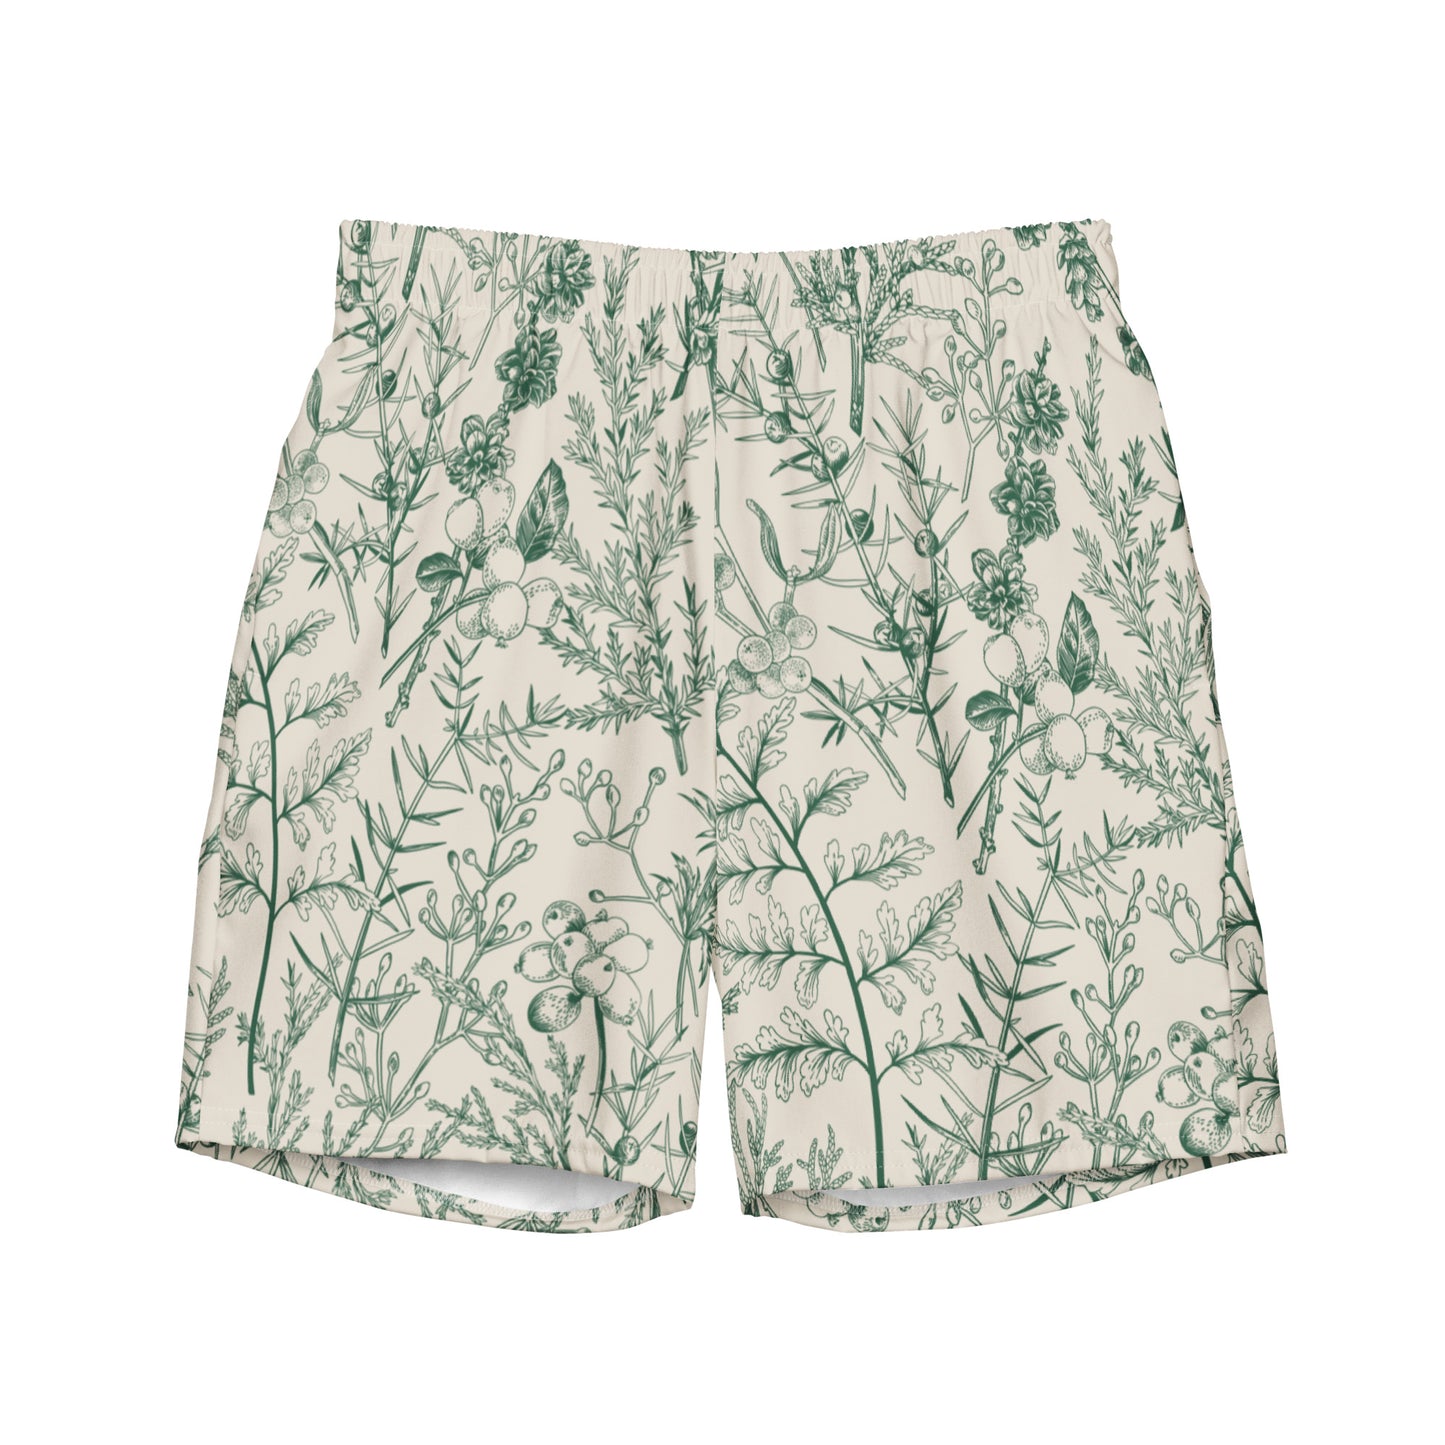 Metsä /Forest - Men's swim trunks - Swimwear- Print N Stuff - [designed in Turku Finland]